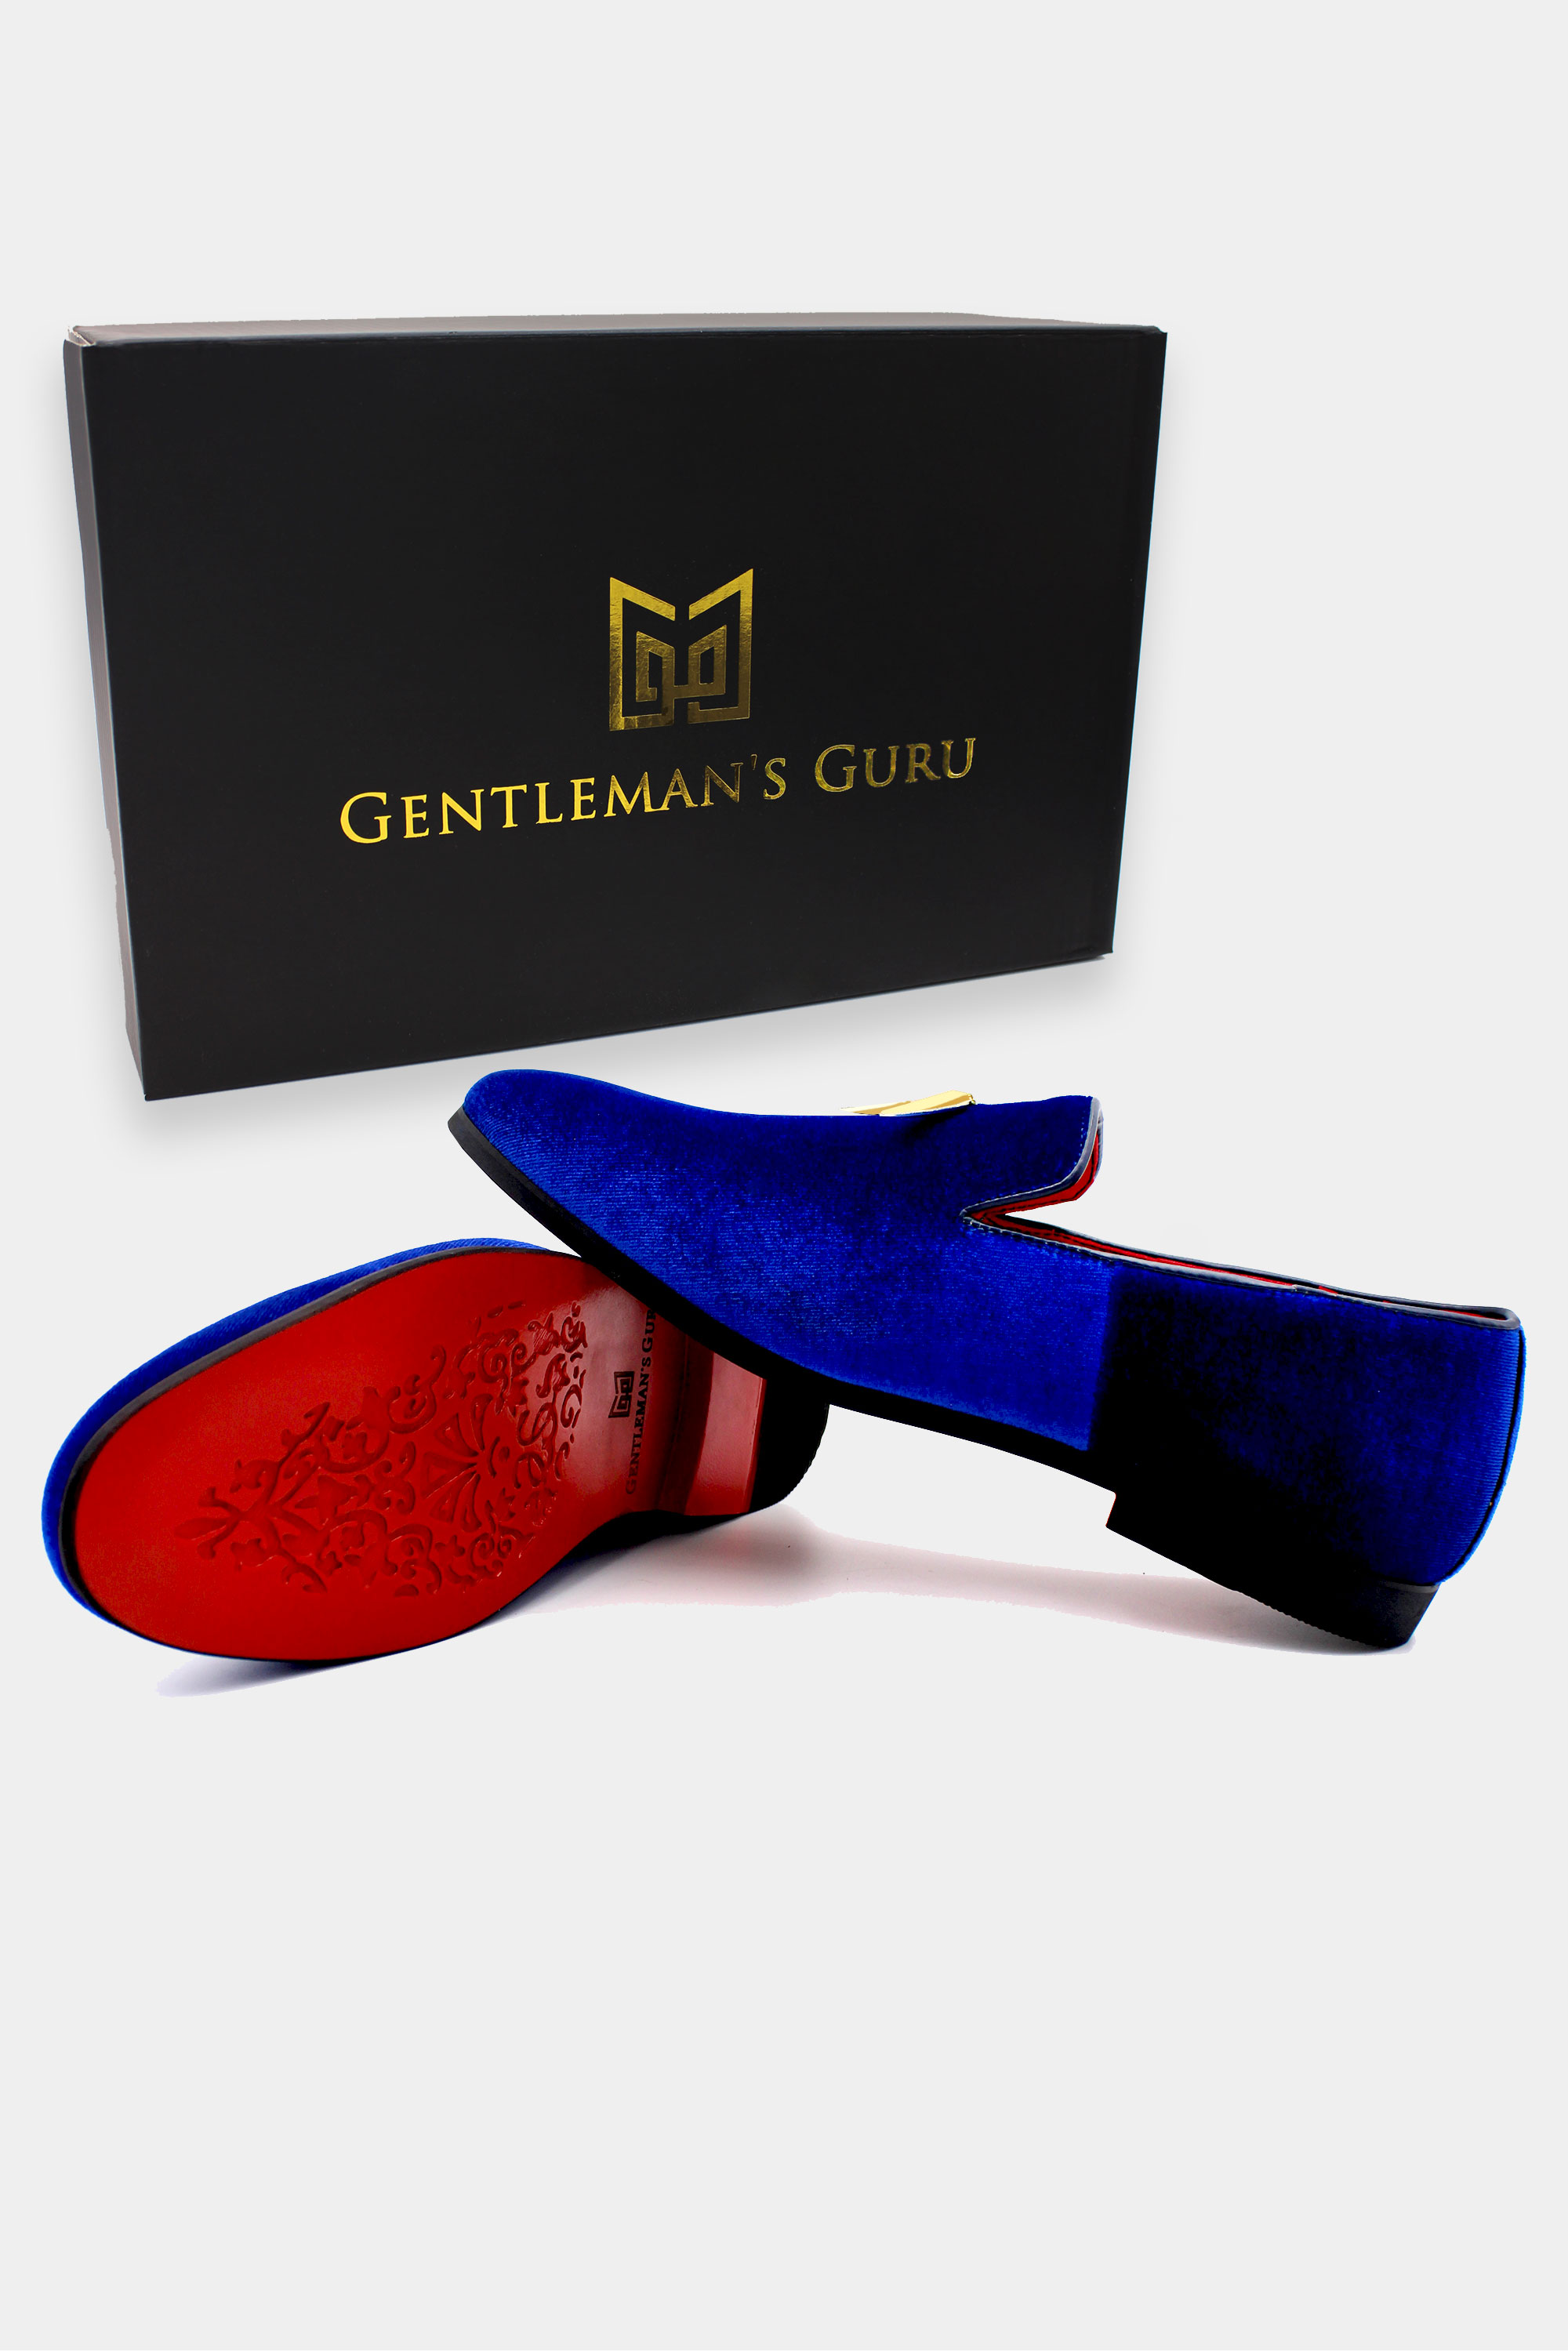 Royal-Blue-Velvet-Suede-Shoes-Loafers-For-Men-from-Gentlemansguru.com